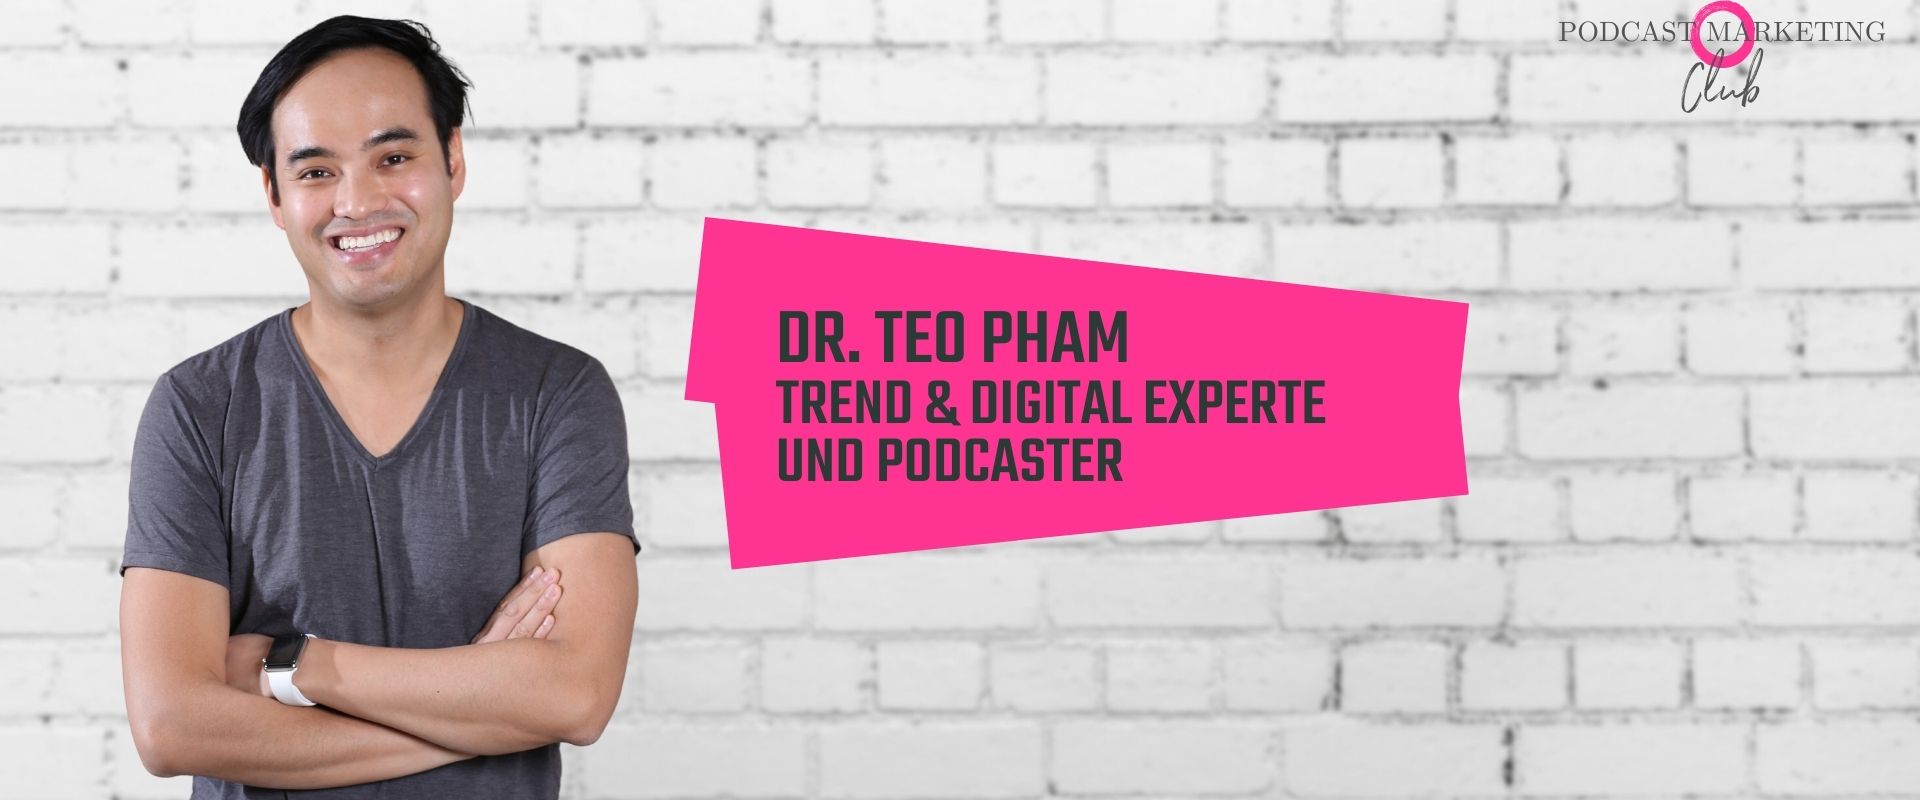 Podcast in Social Media Teo Pham 110